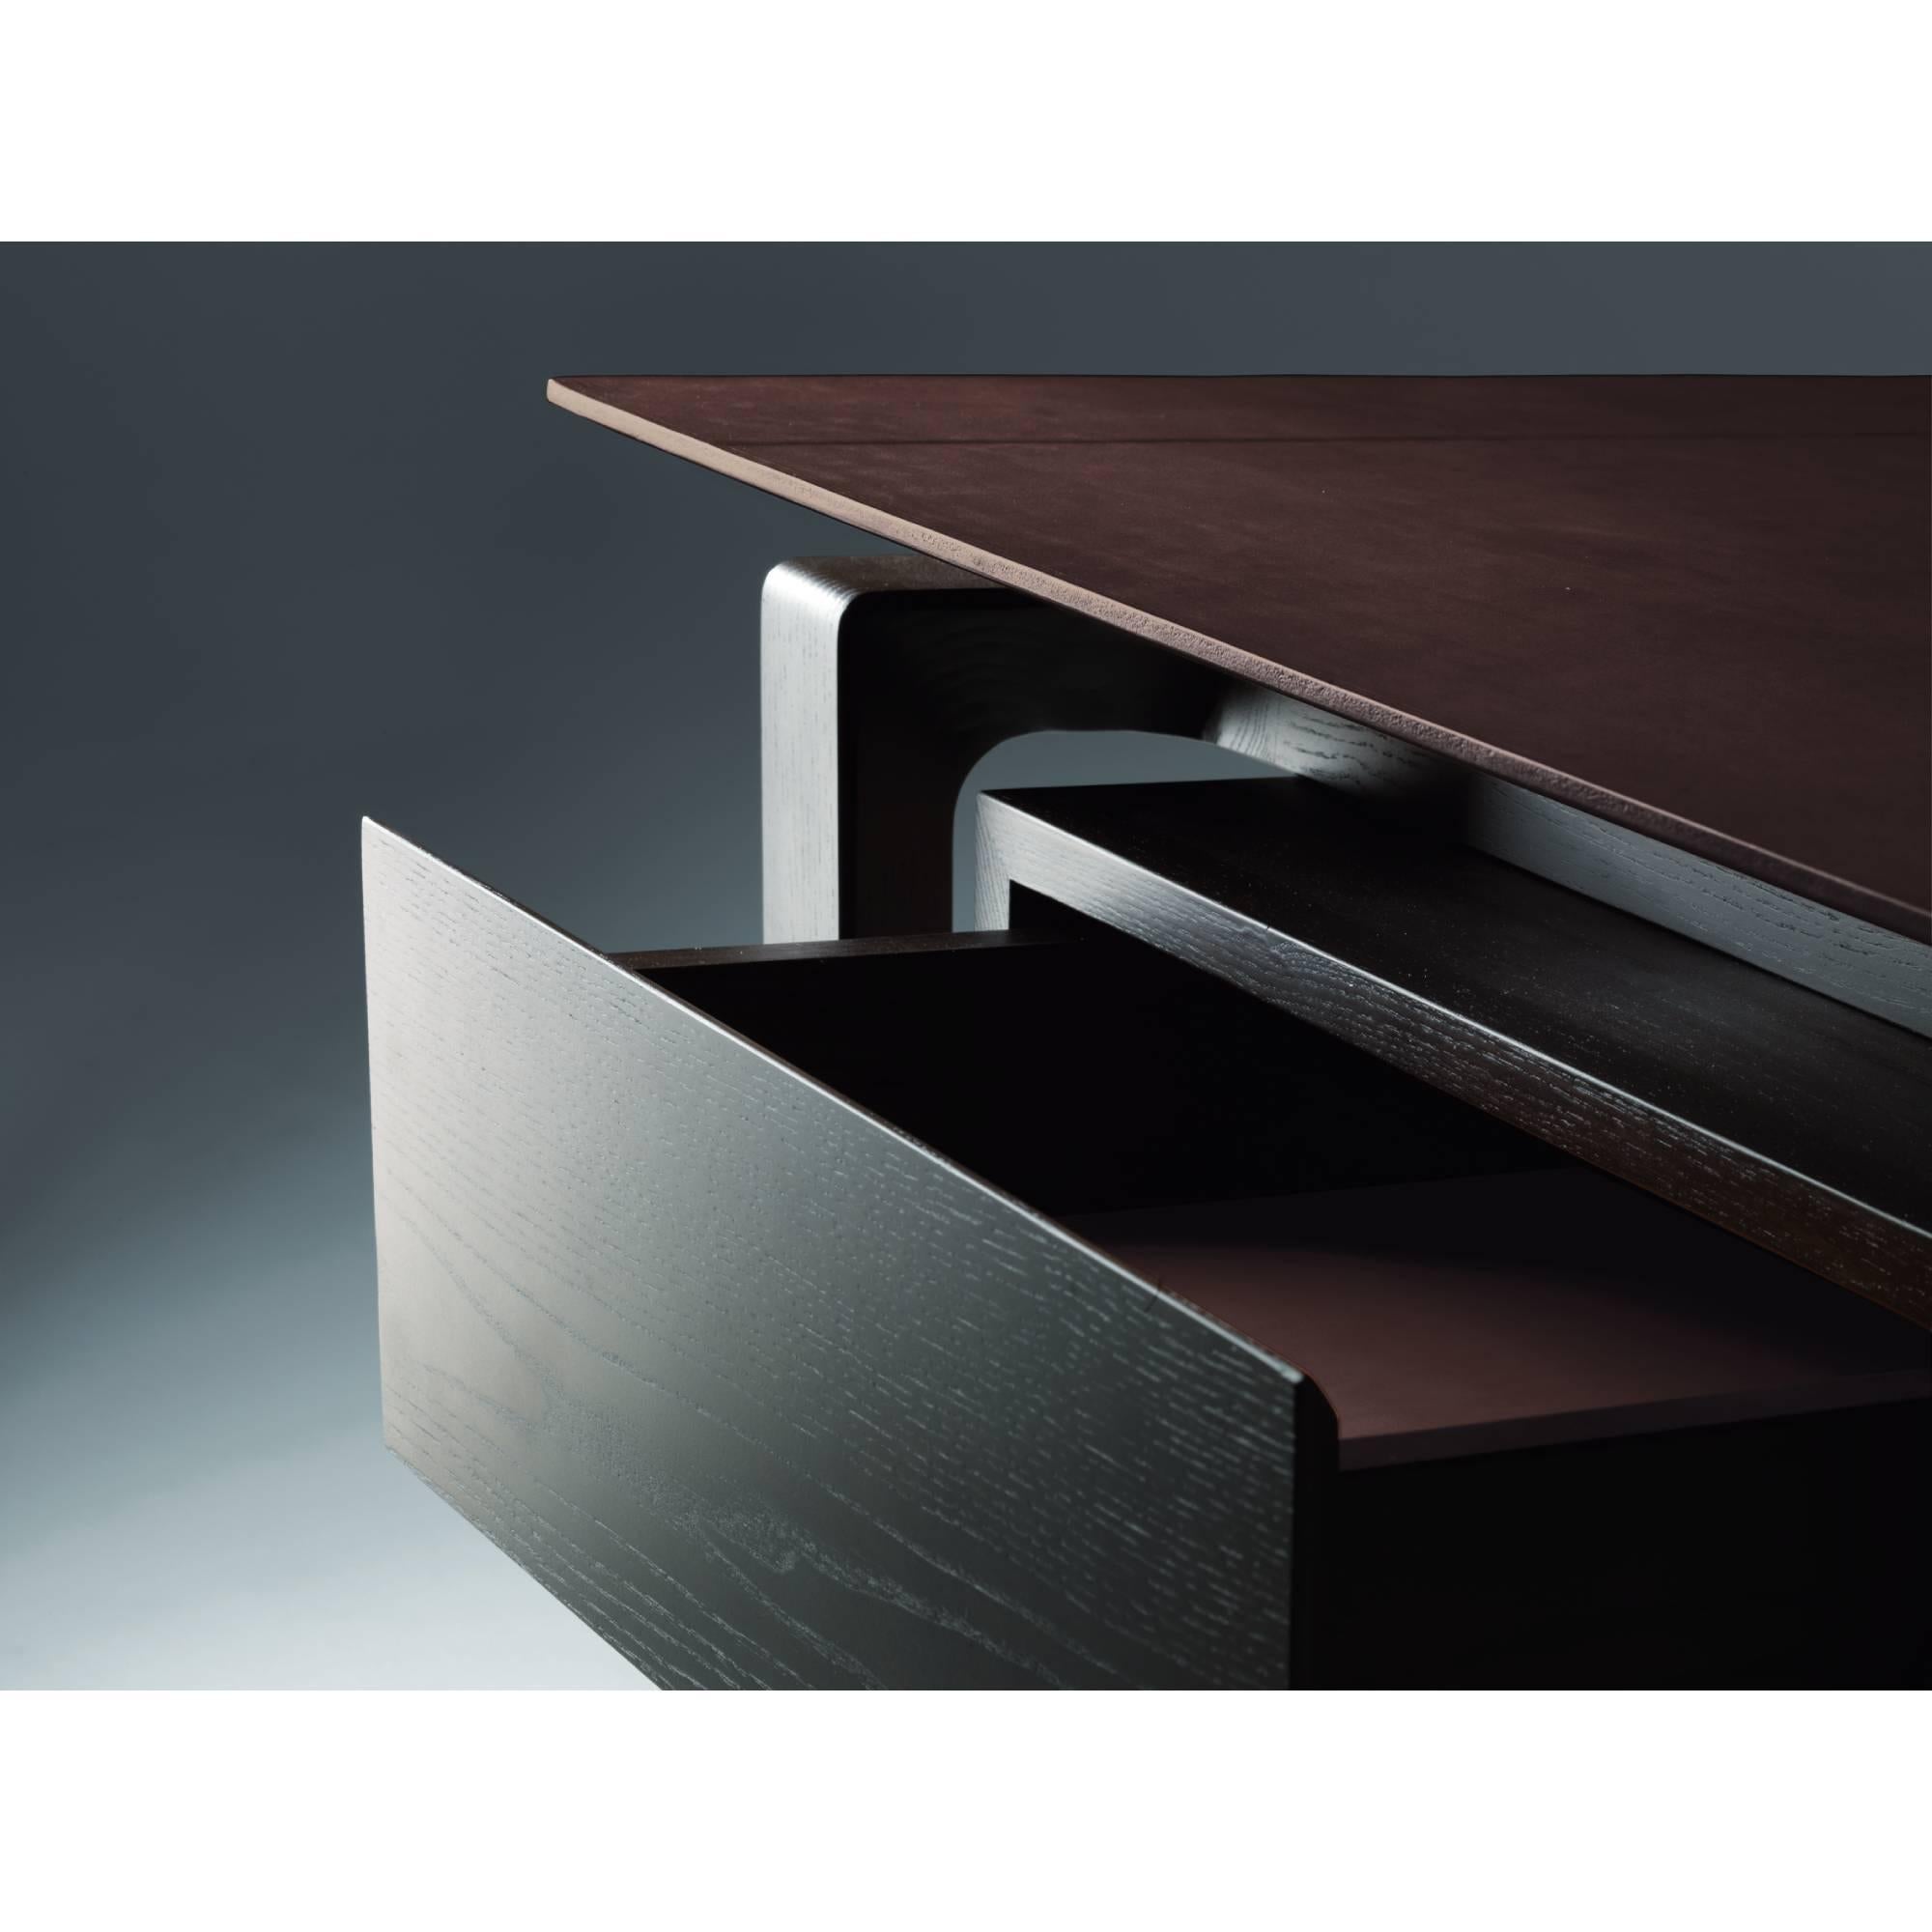 Dieser Schreibtisch ist eine Begegnung mit leichten, fast ätherischen Geometrien. Roberto Lazzeroni entwirft ein Möbelstück, bei dem das visuelle Vergnügen einer durchgehenden Sattellederoberfläche durch zarte handgefertigte Einschnitte und kalte